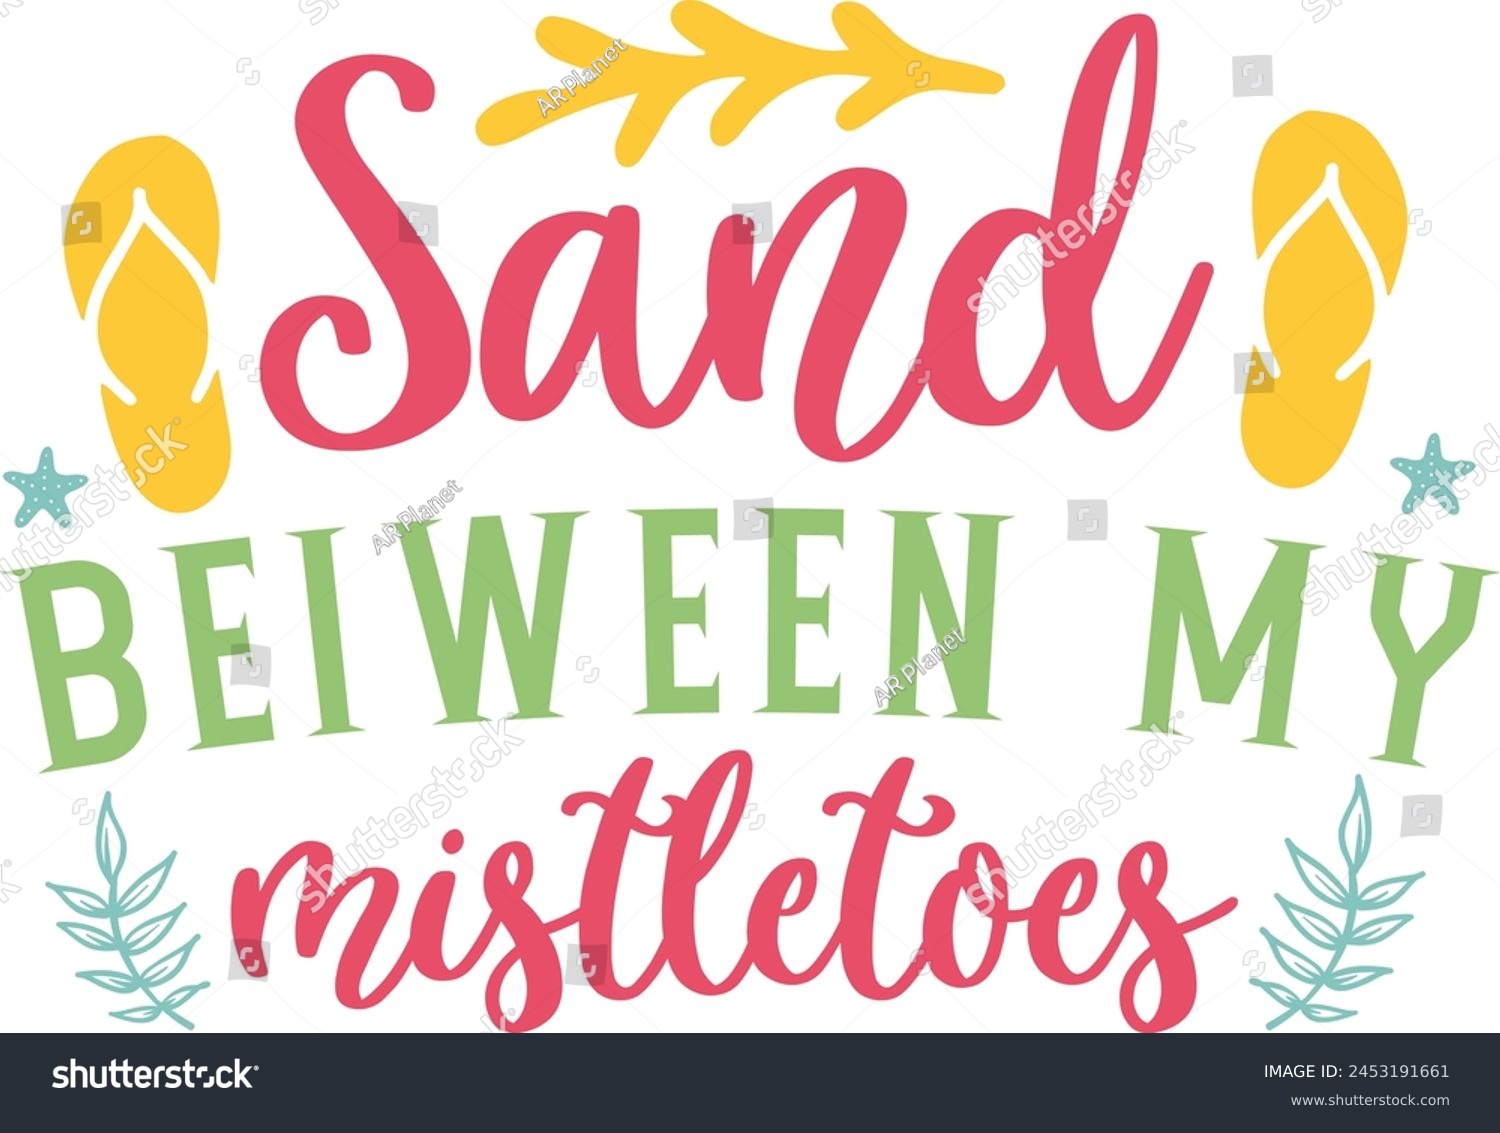 SVG of Sand Bel ween my mistletoes svg